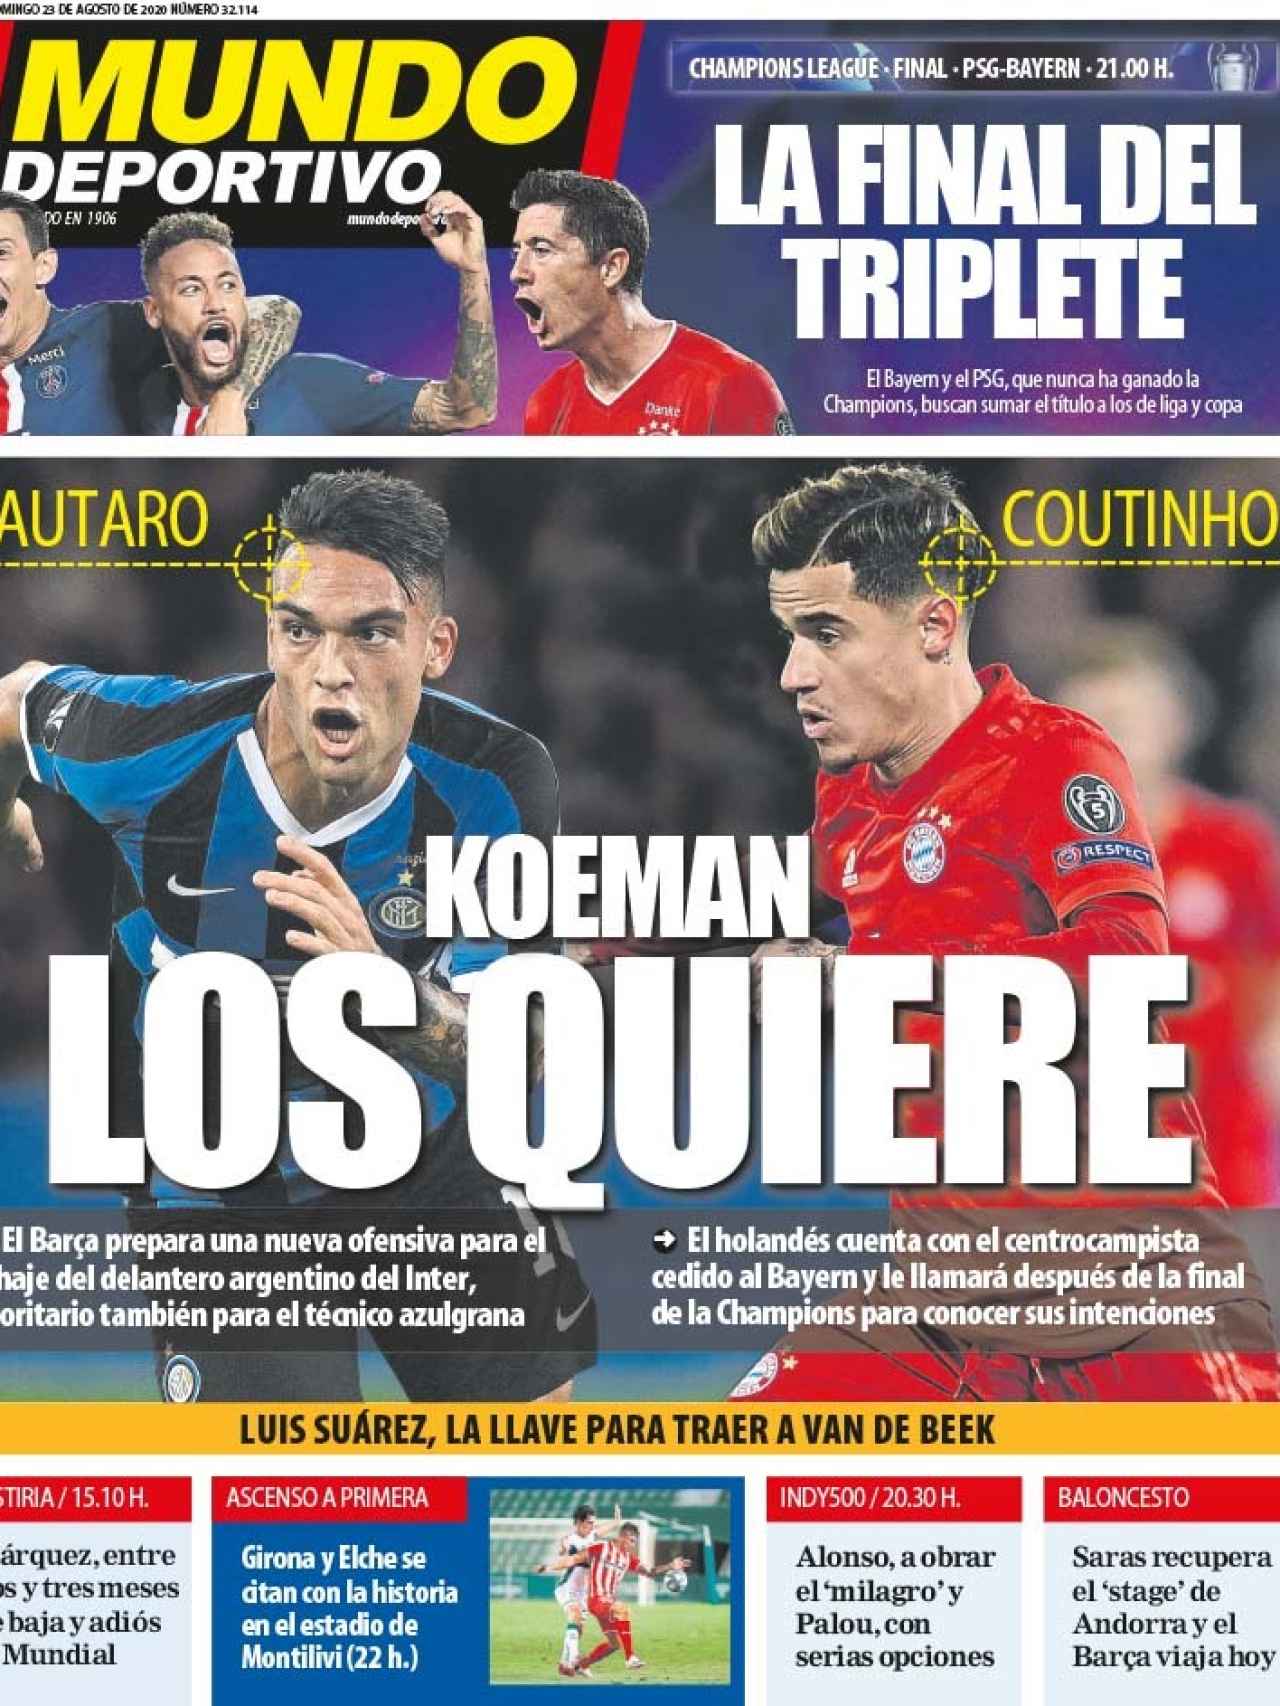 La portada del diario Mundo Deportivo (23/08/2020)